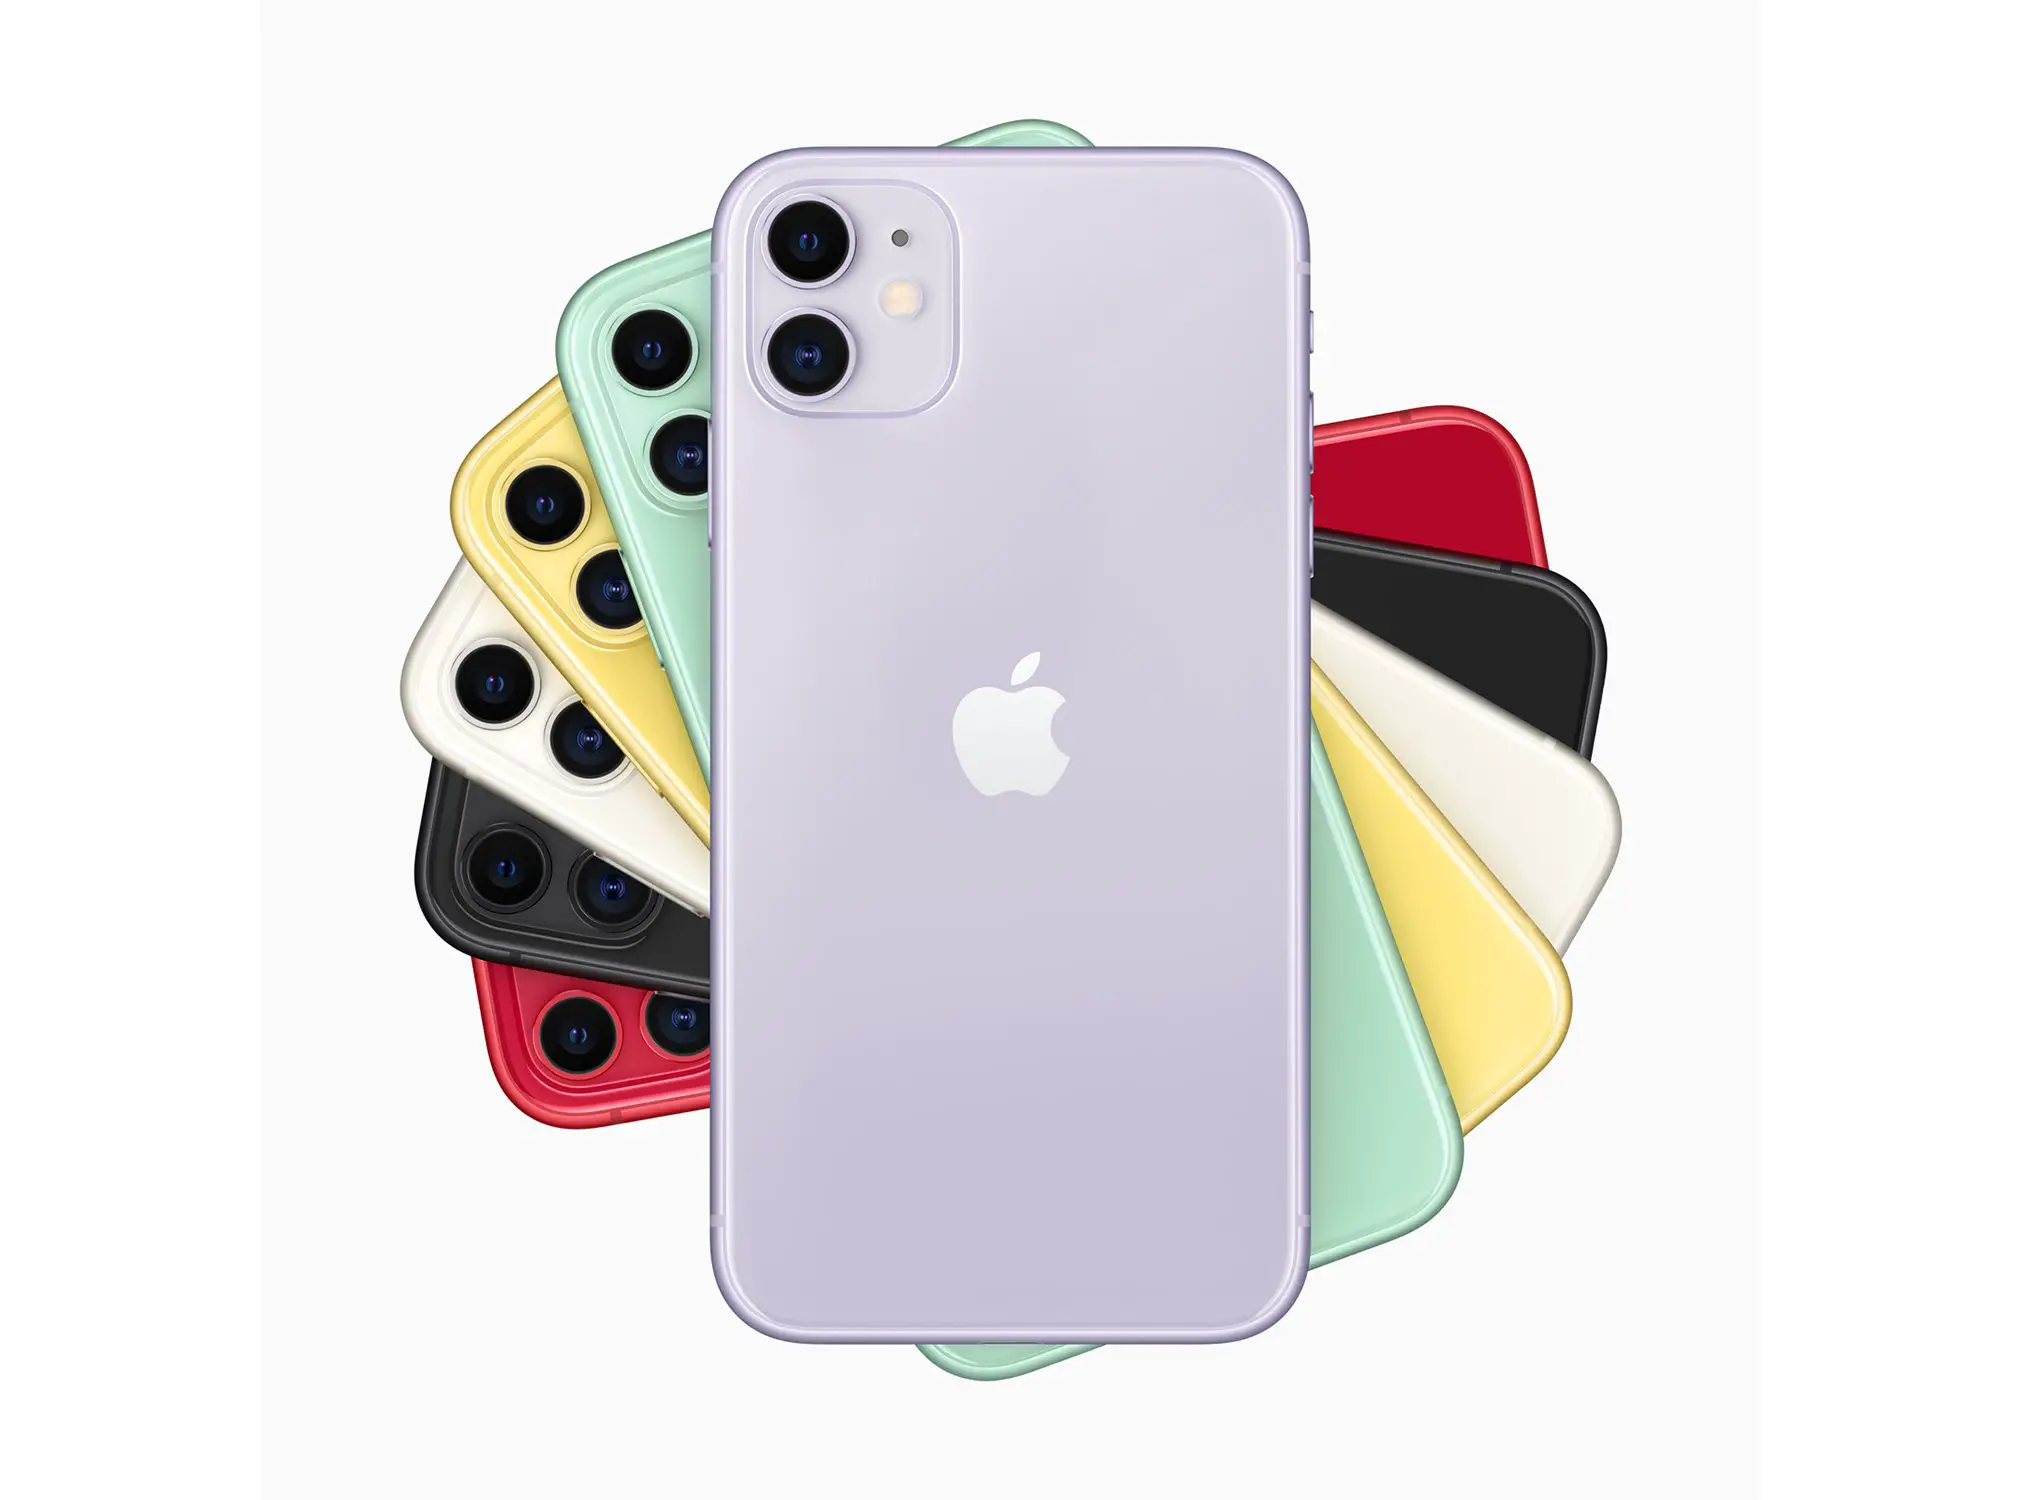 As seis cores do iPhone 11